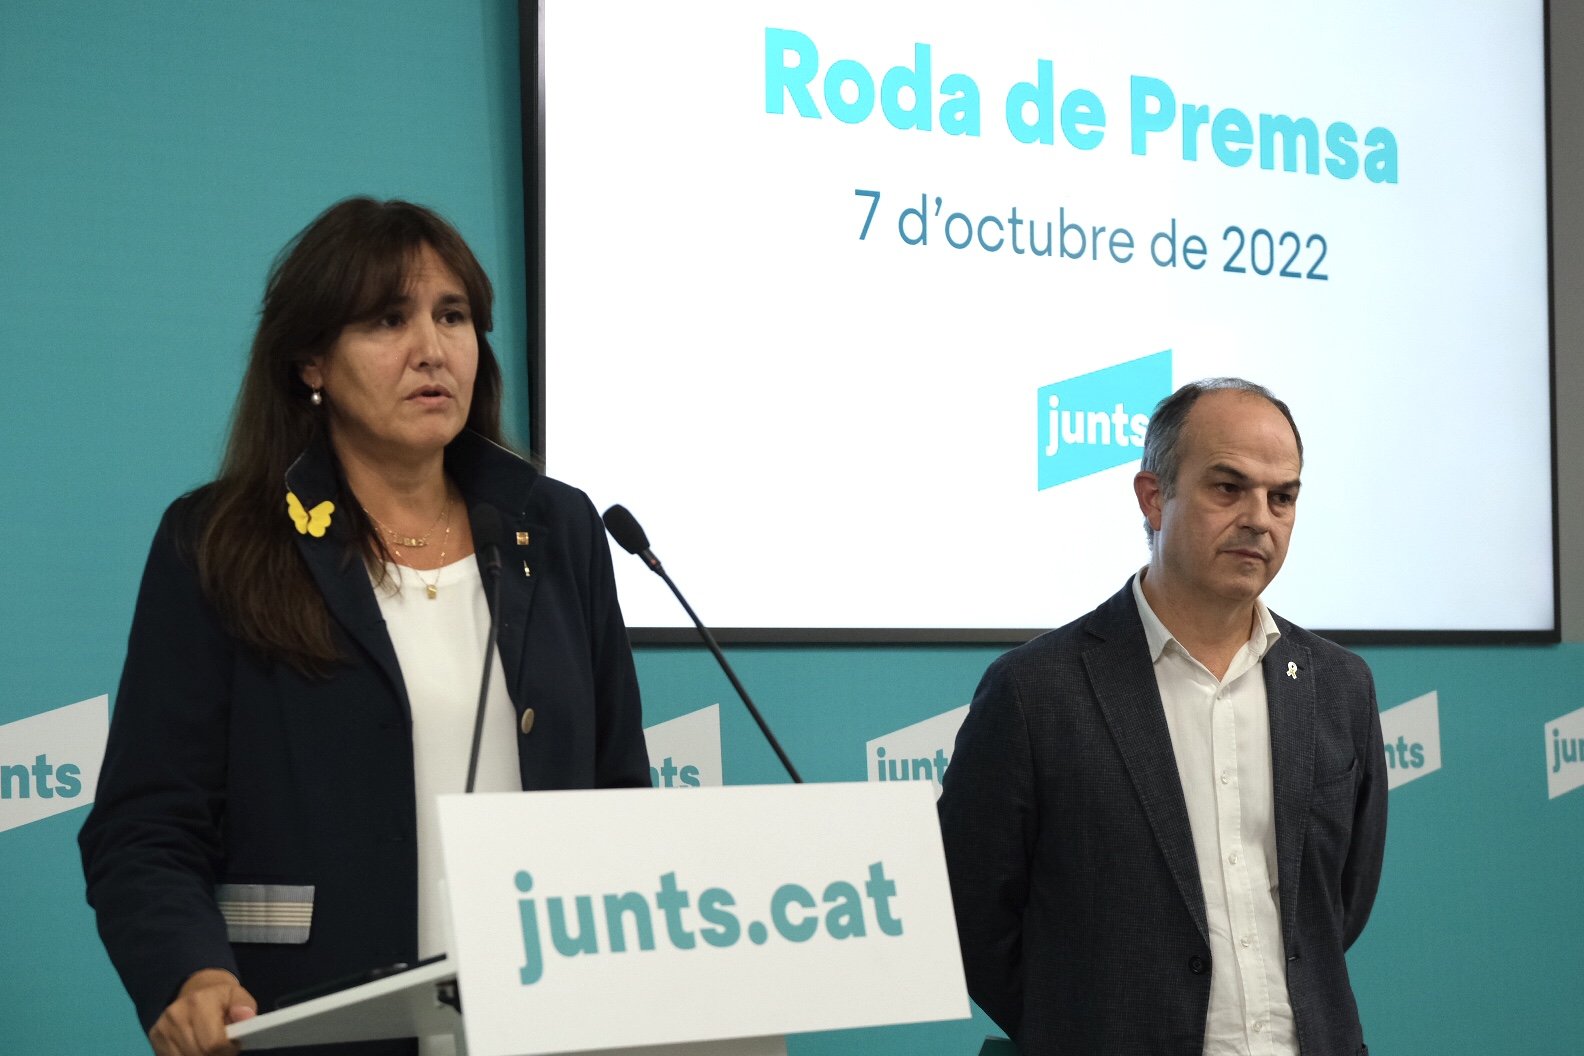 Laura Borràs takes reins of Junts and warns ERC: "Junts wins, Aragonès loses"